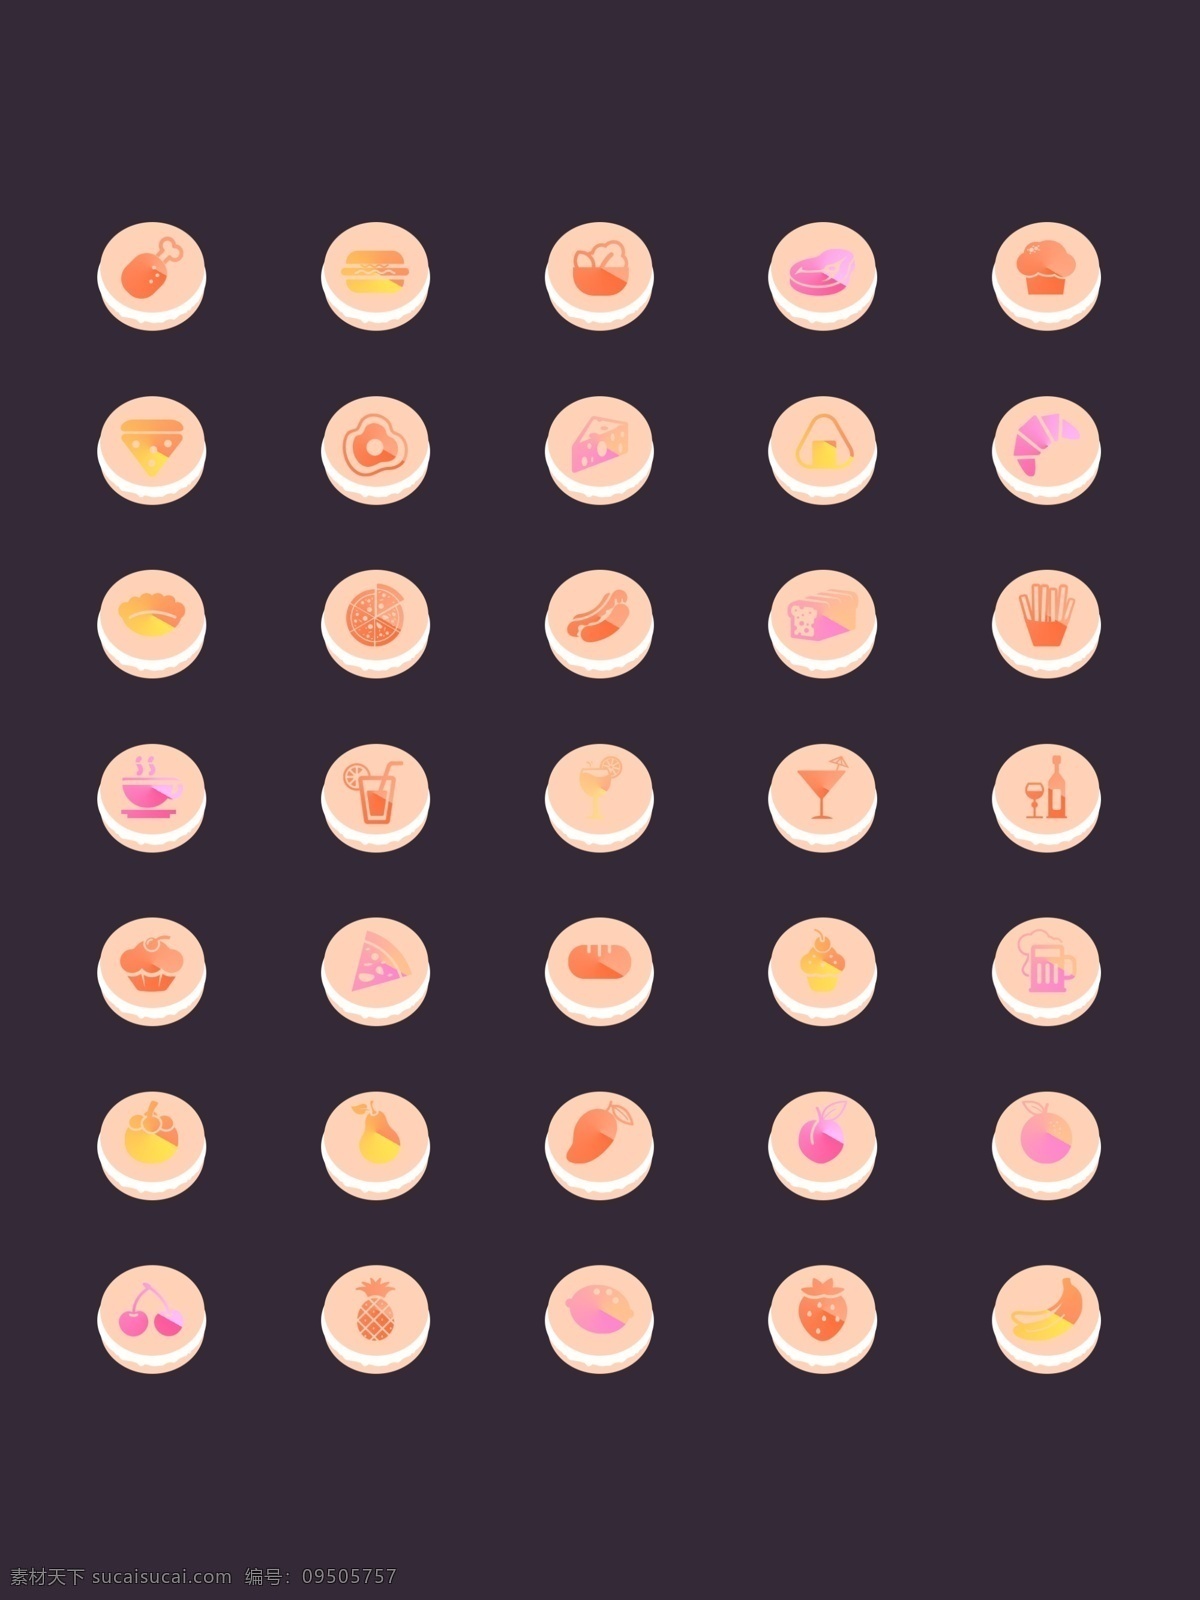 款 美食 app 常用 icon 图标 饮料 食品 蛋糕 甜品 肉 水果